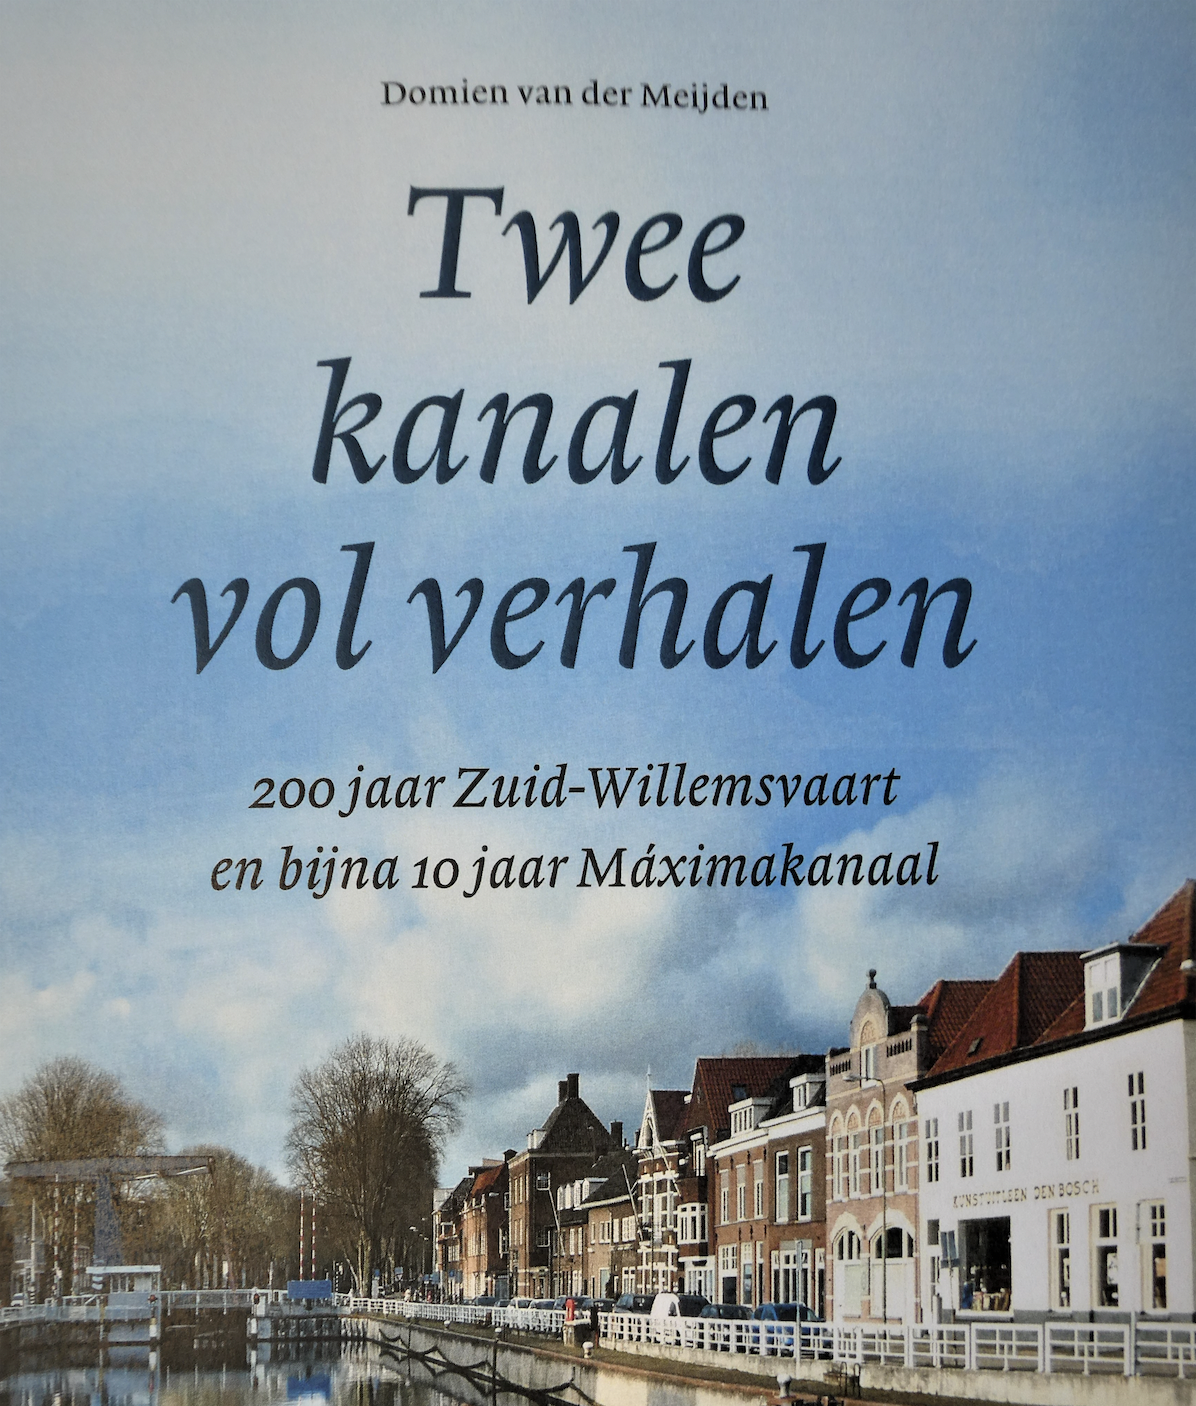 De cover van het boek, Twee kanalen vol verhalen. (Foto Domien van der Meijden)